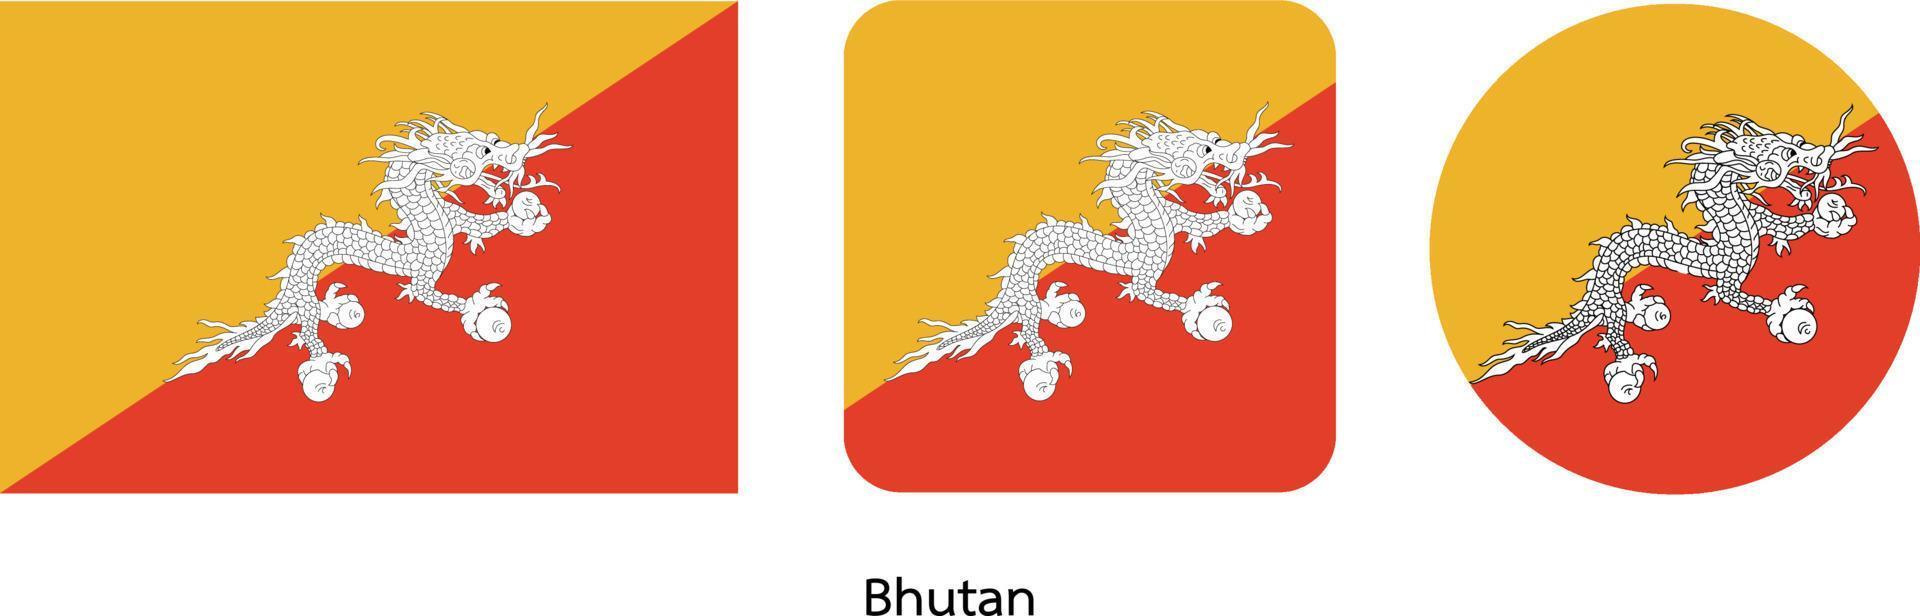 bandiera del bhutan, illustrazione vettoriale